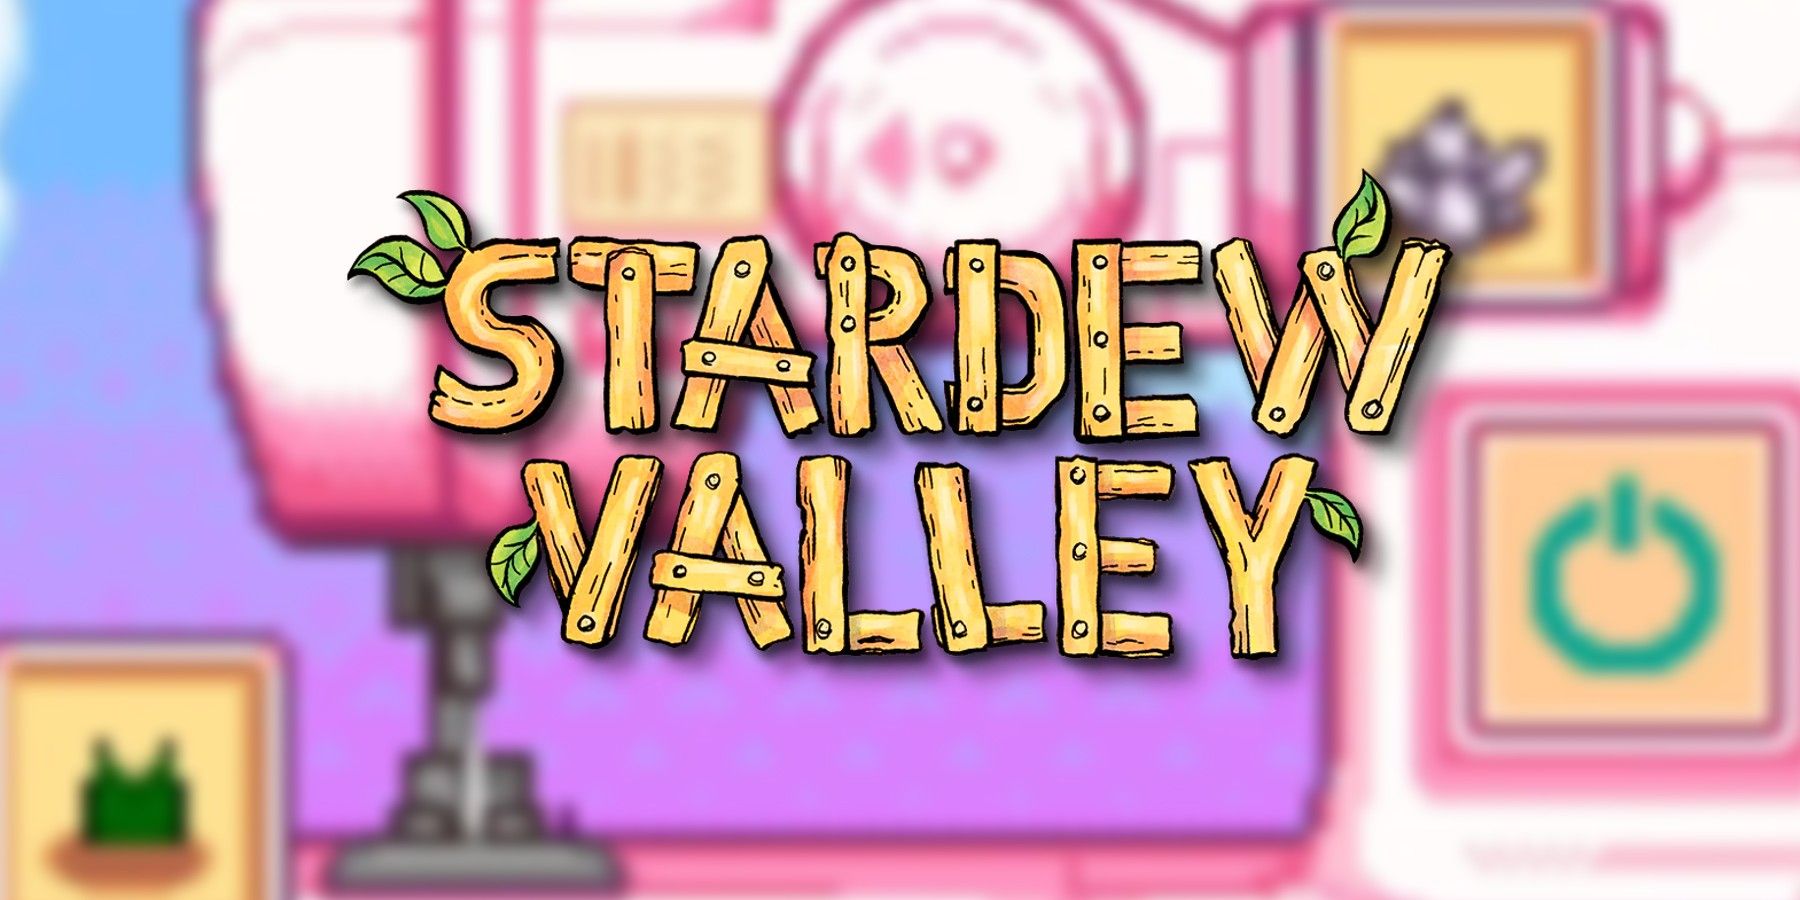 stardew-valley-logo-blurred-sewing-machine-background